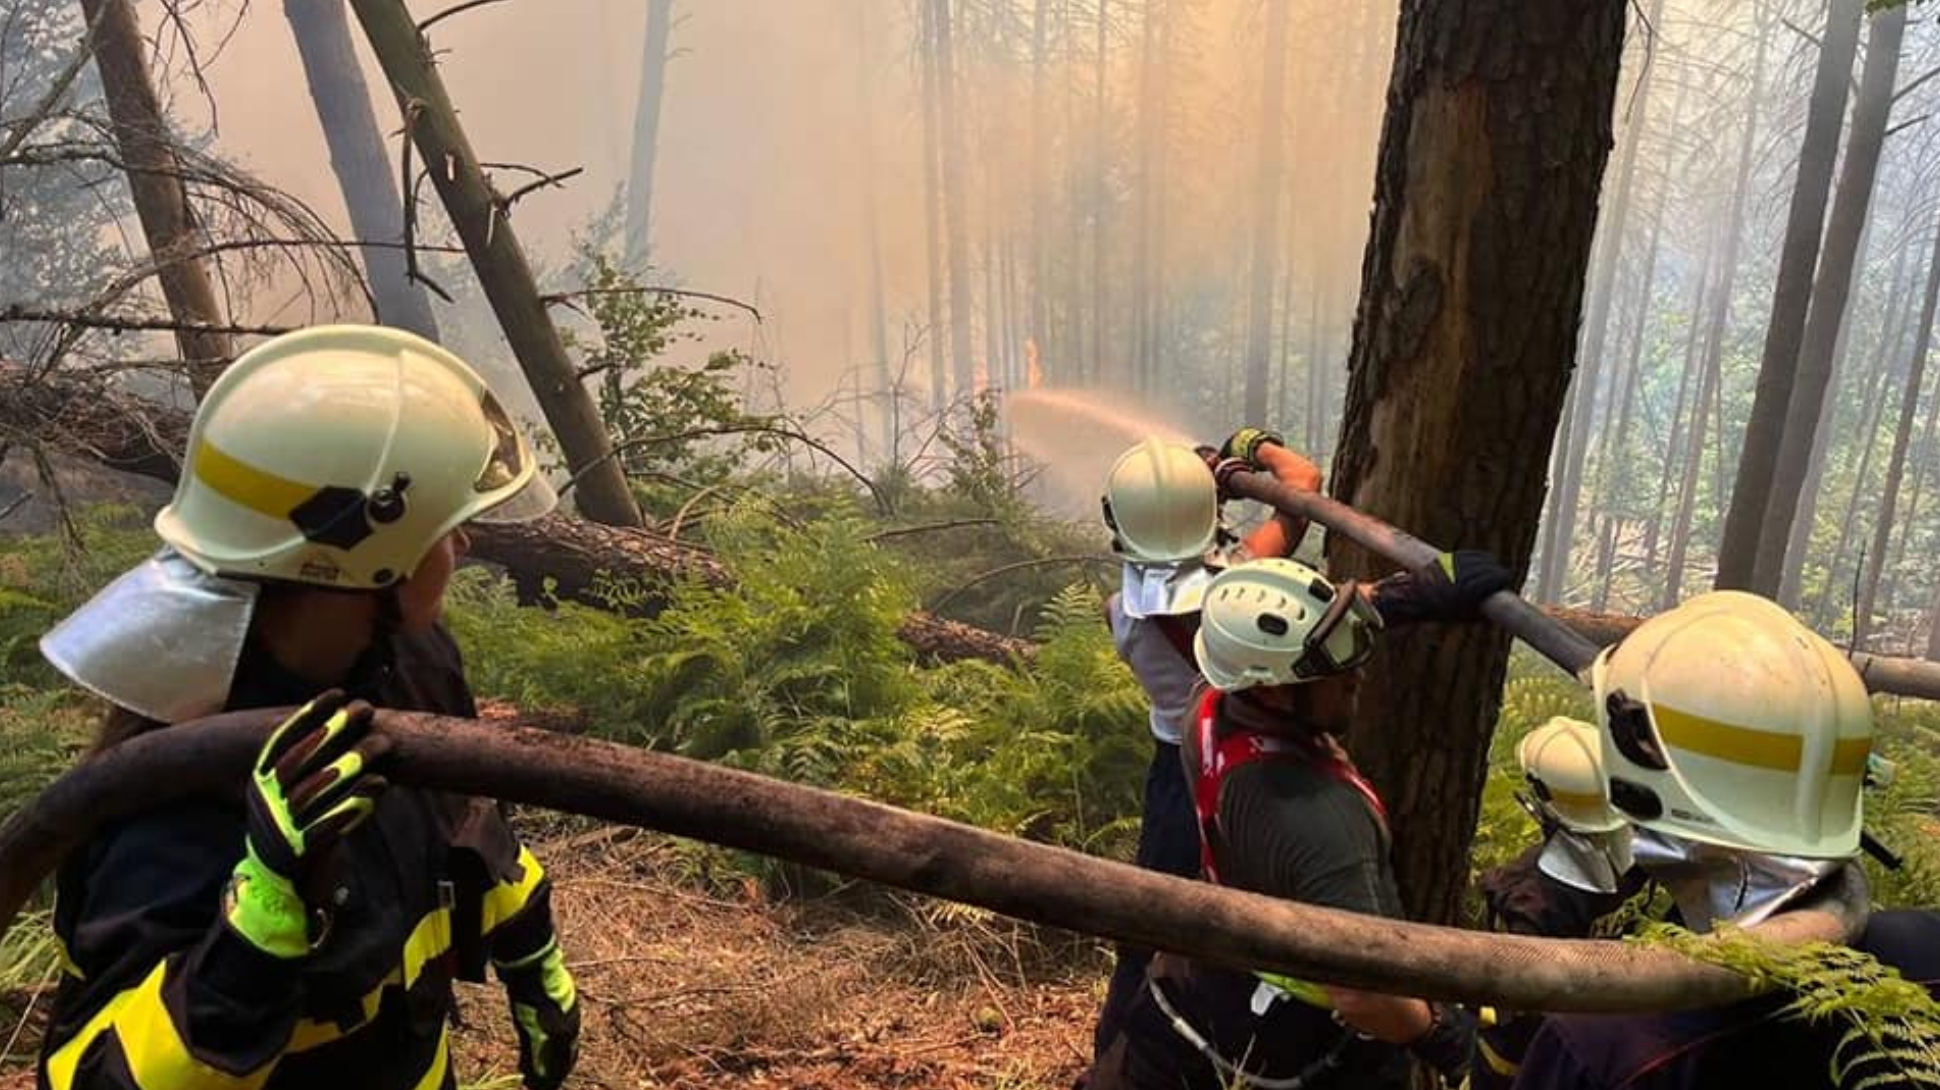  Massive blaze ravages Czech national park